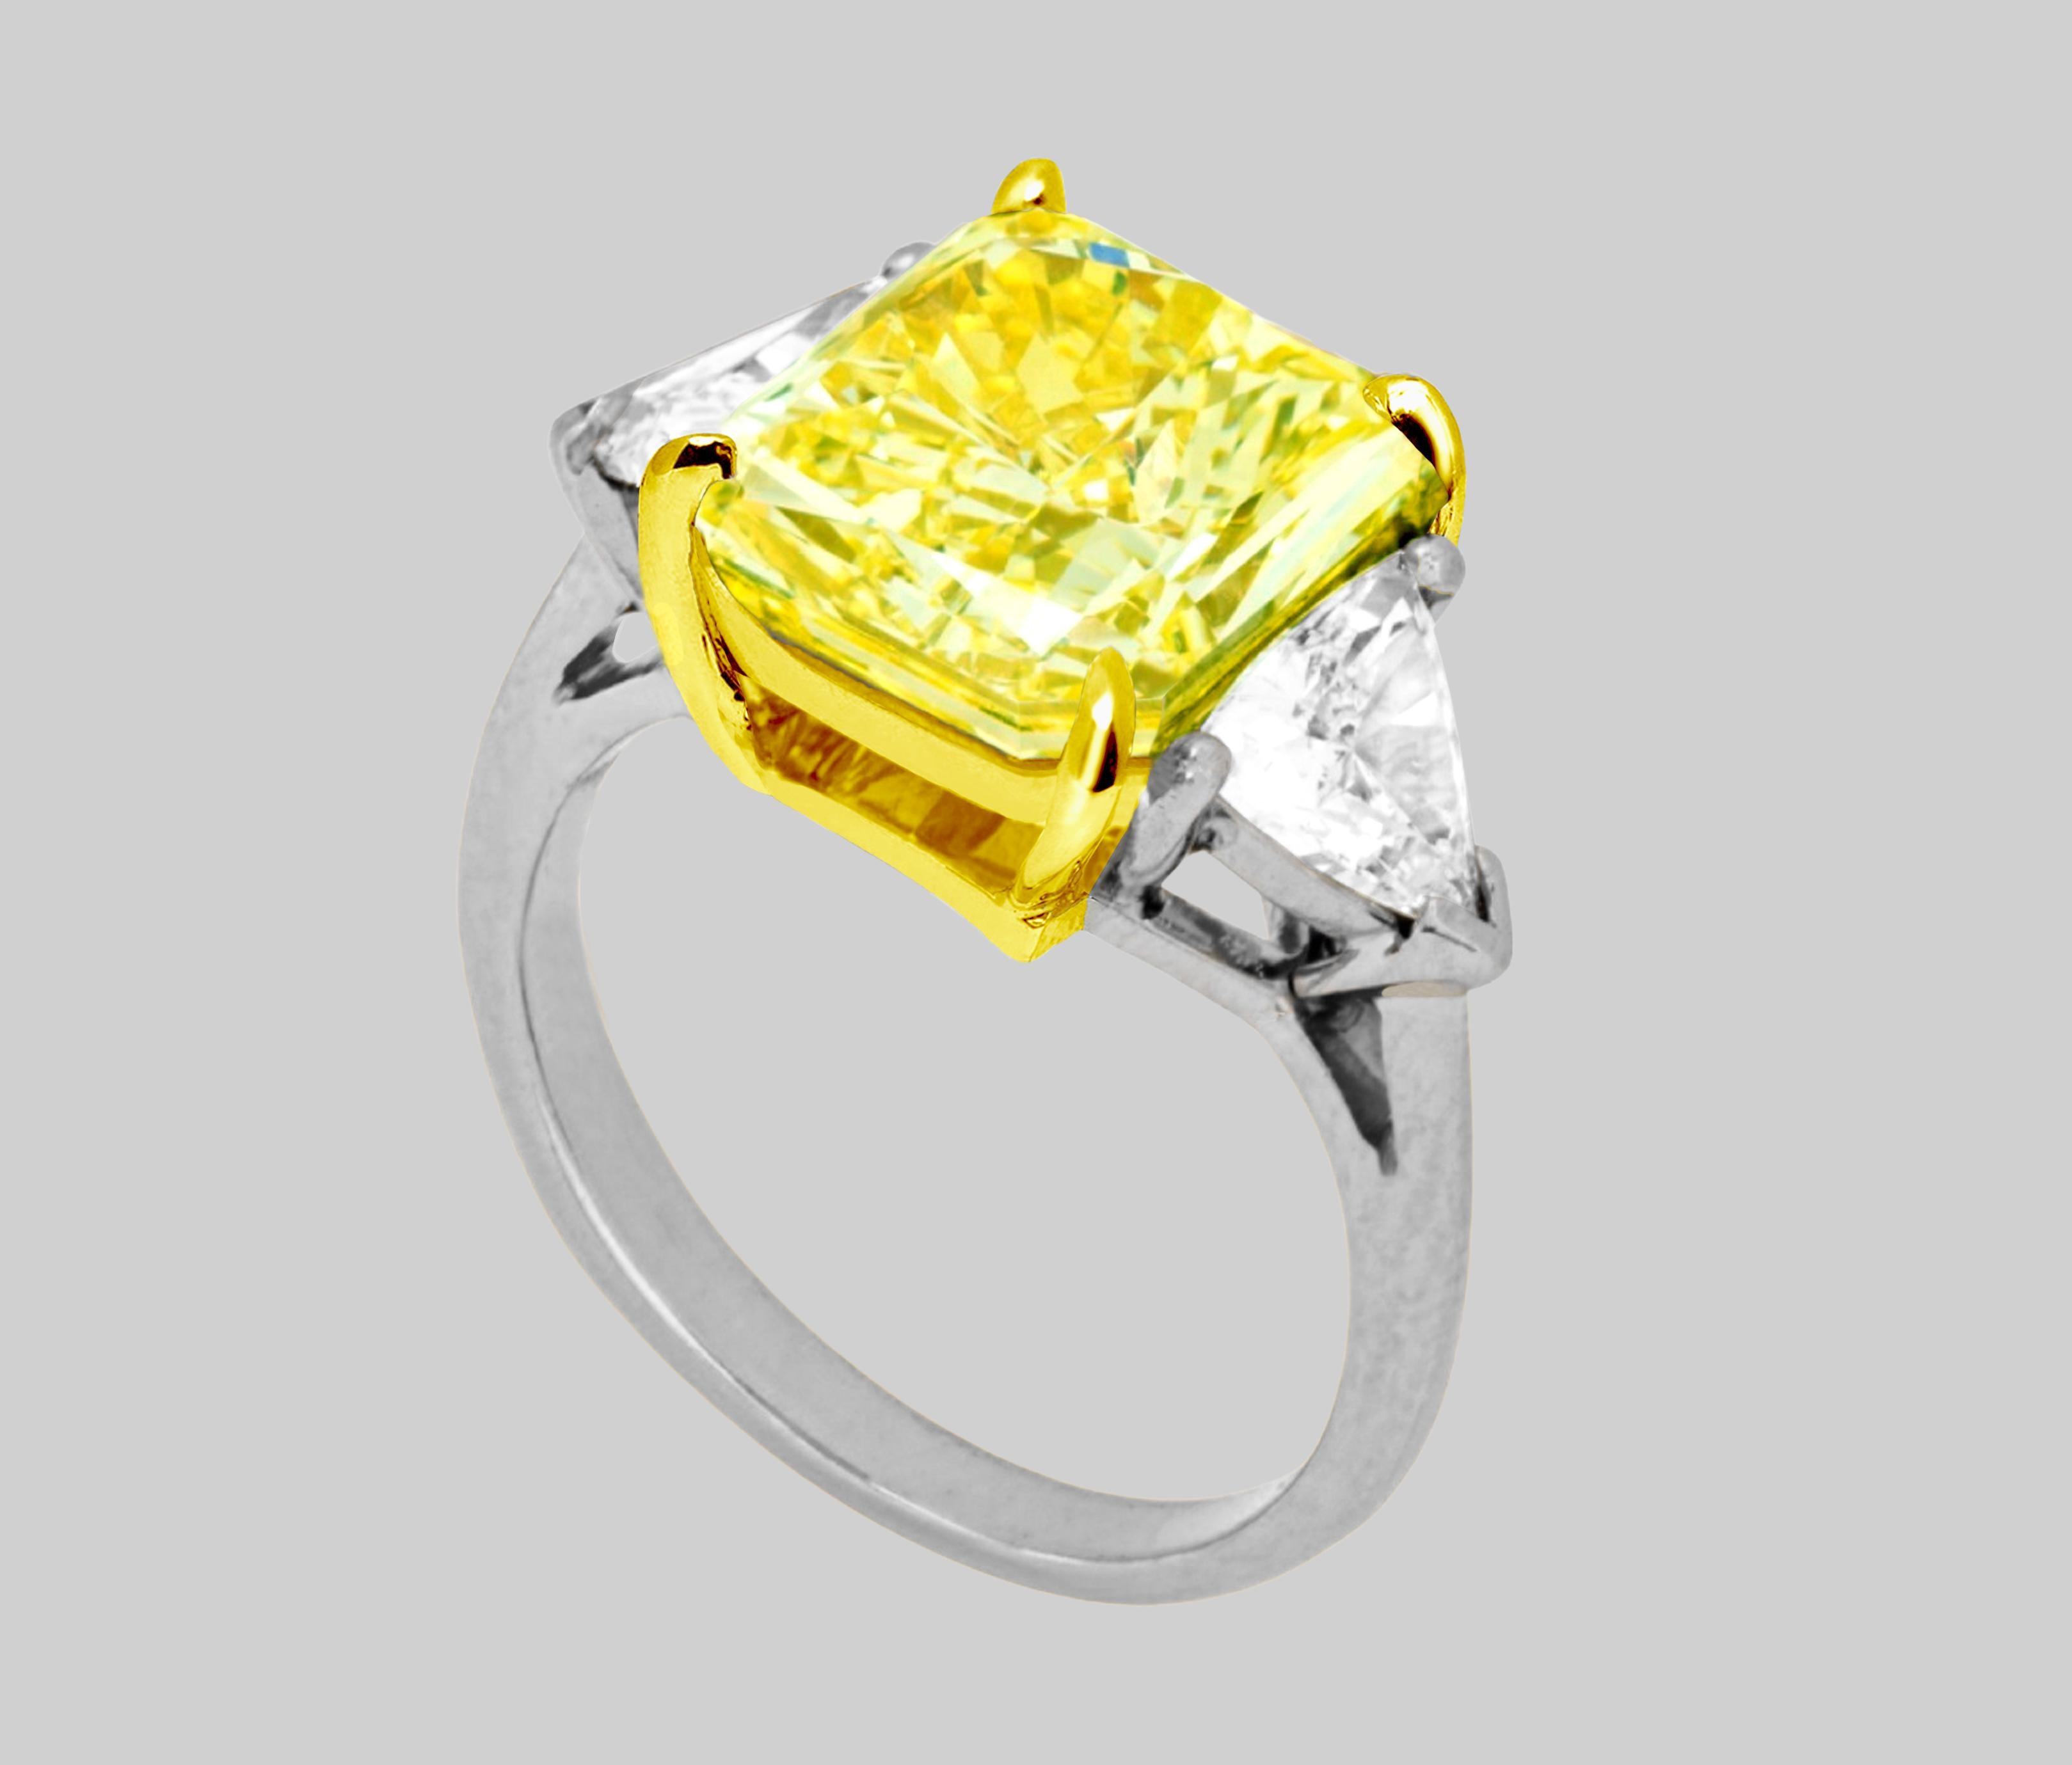 GIA Certified 4 Carat Fancy Intense Yellow Cushion Cut Diamond Ring
